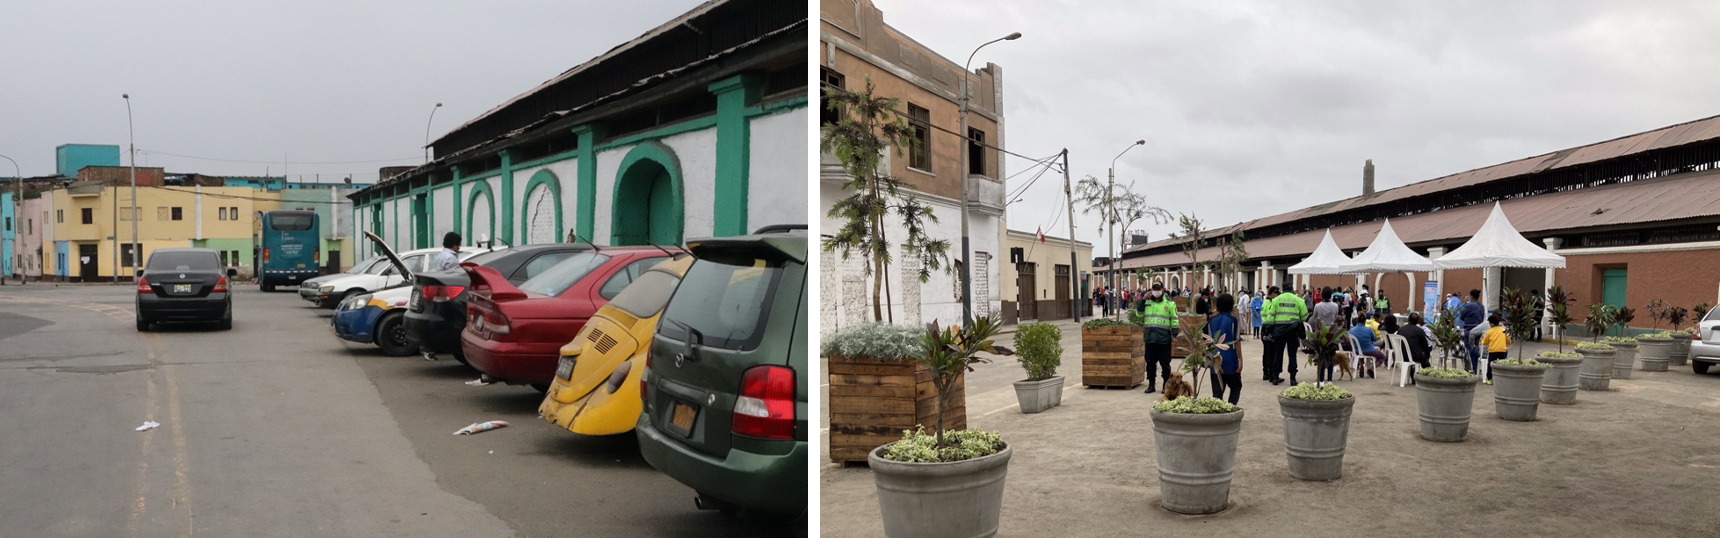 Une image de Lima avant et après